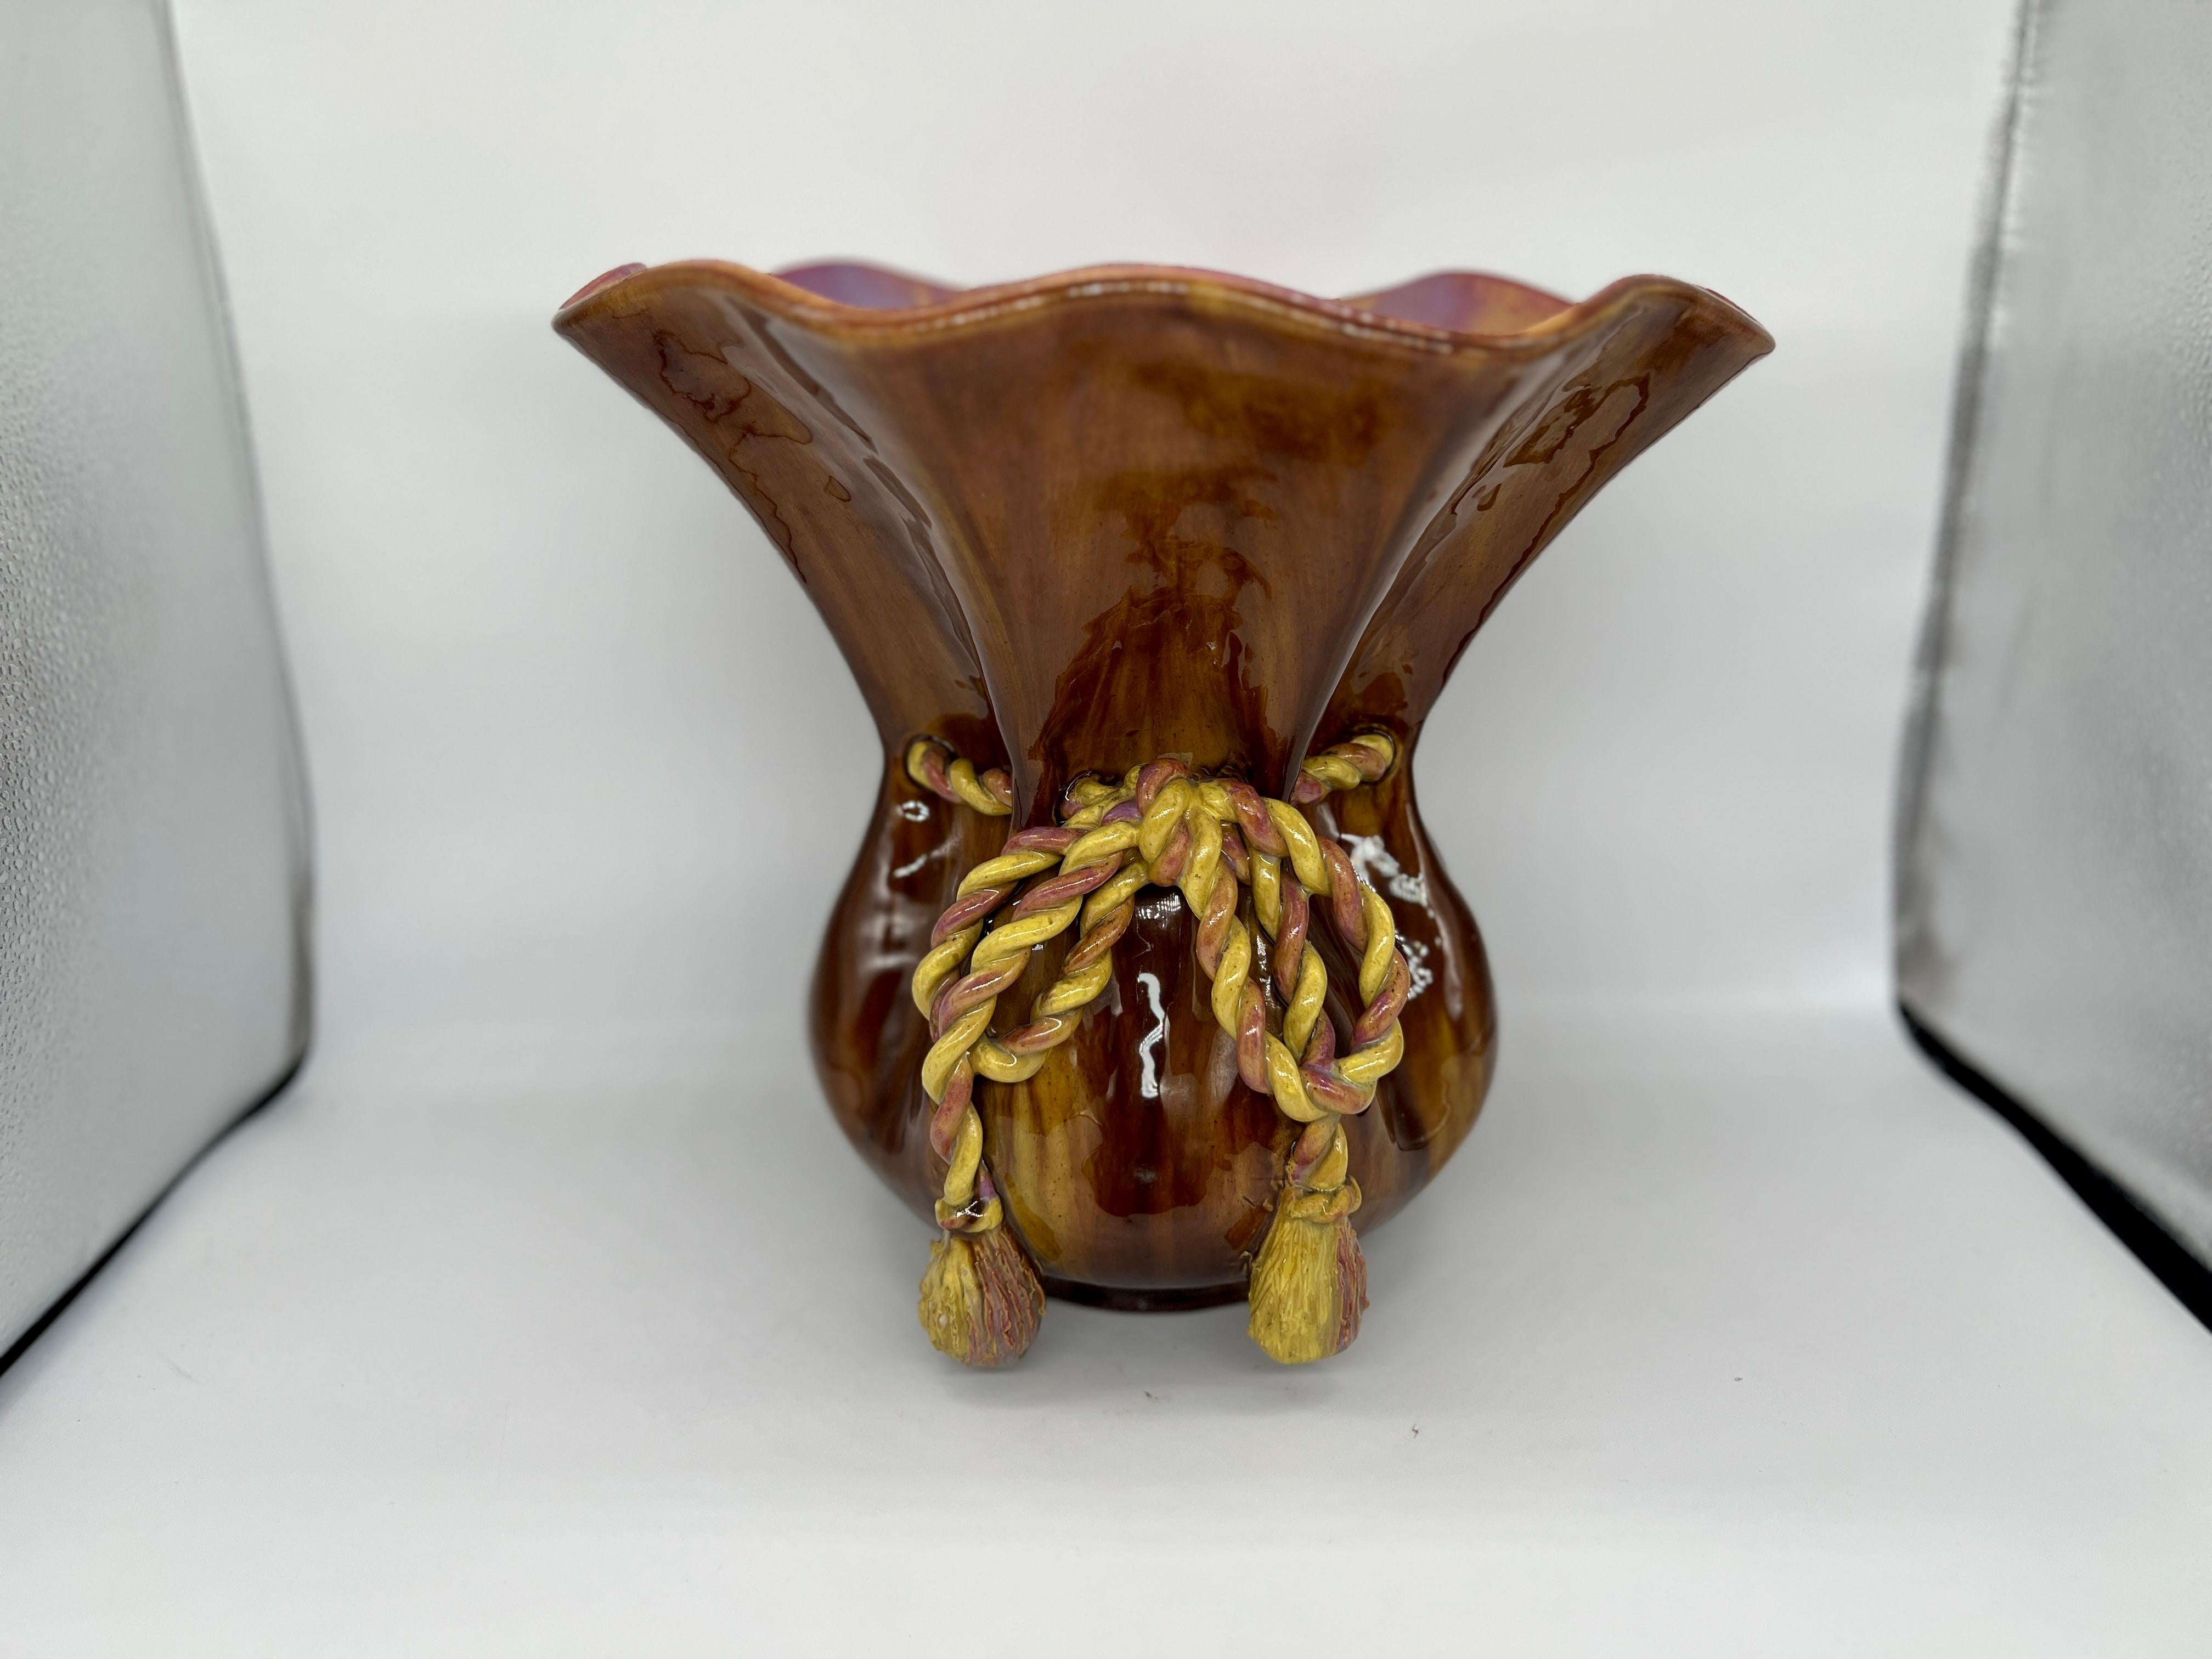 Aubagne Frankreich, Anfang des 20. Jahrhunderts.

Eine sehr ungewöhnliche französische Keramik mit einer schönen braunen Glasur außen und einer polychromen Glasur innen. Die Vase oder Jardiniere weist ein lebensechtes, geflochtenes Seil auf, das um